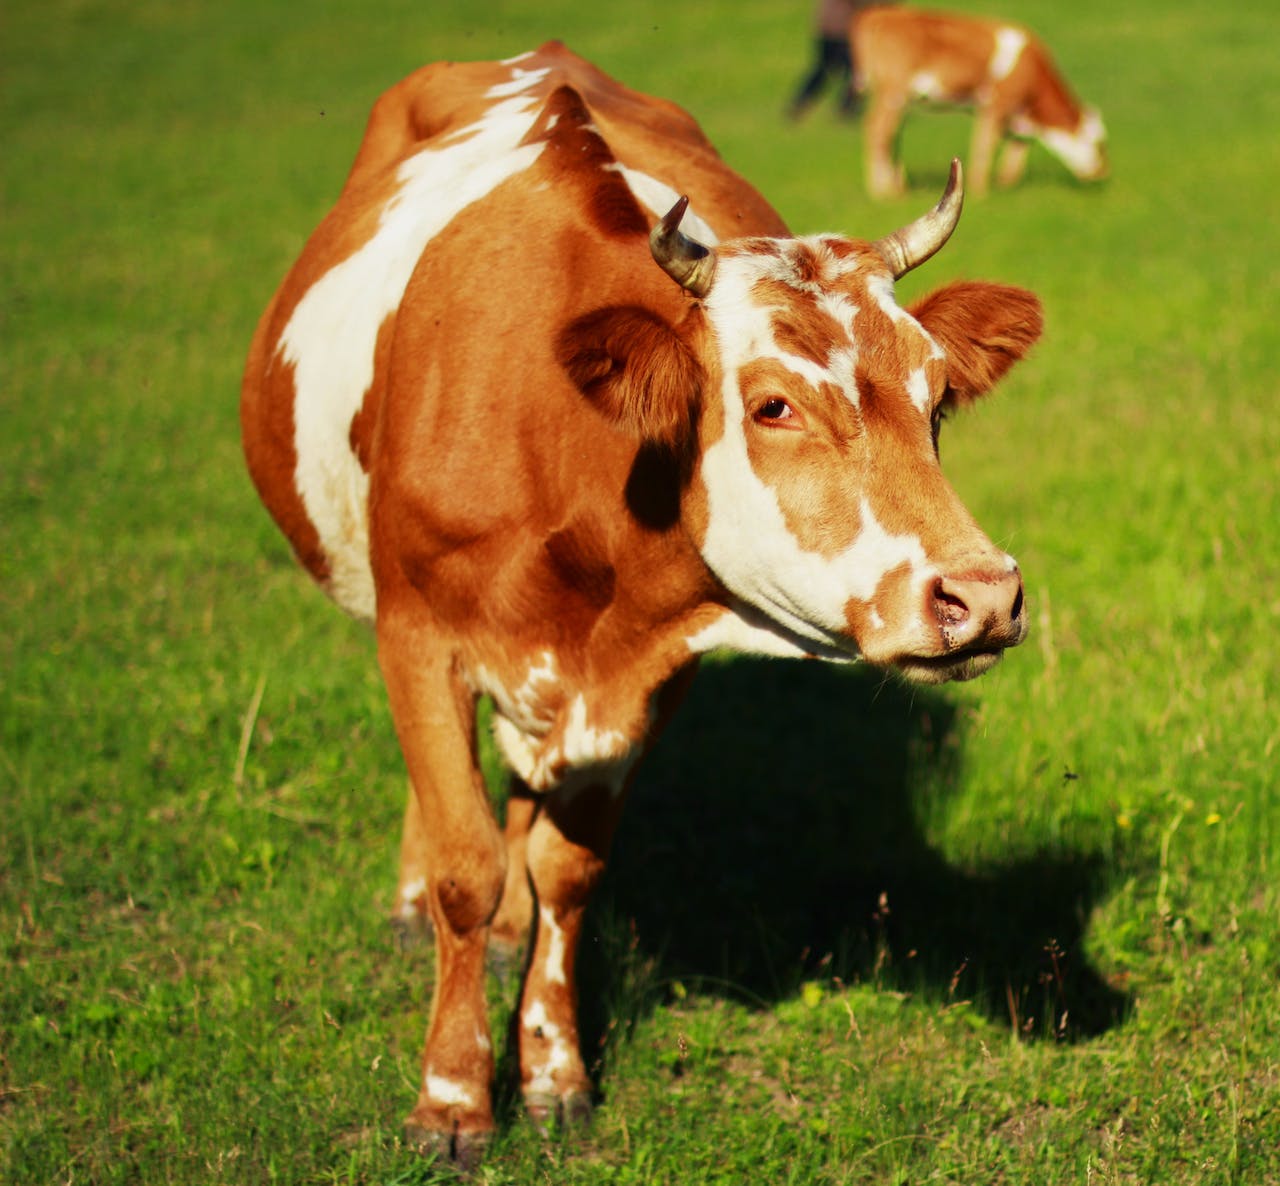 Fotografía de una Vaca criada como ganado.